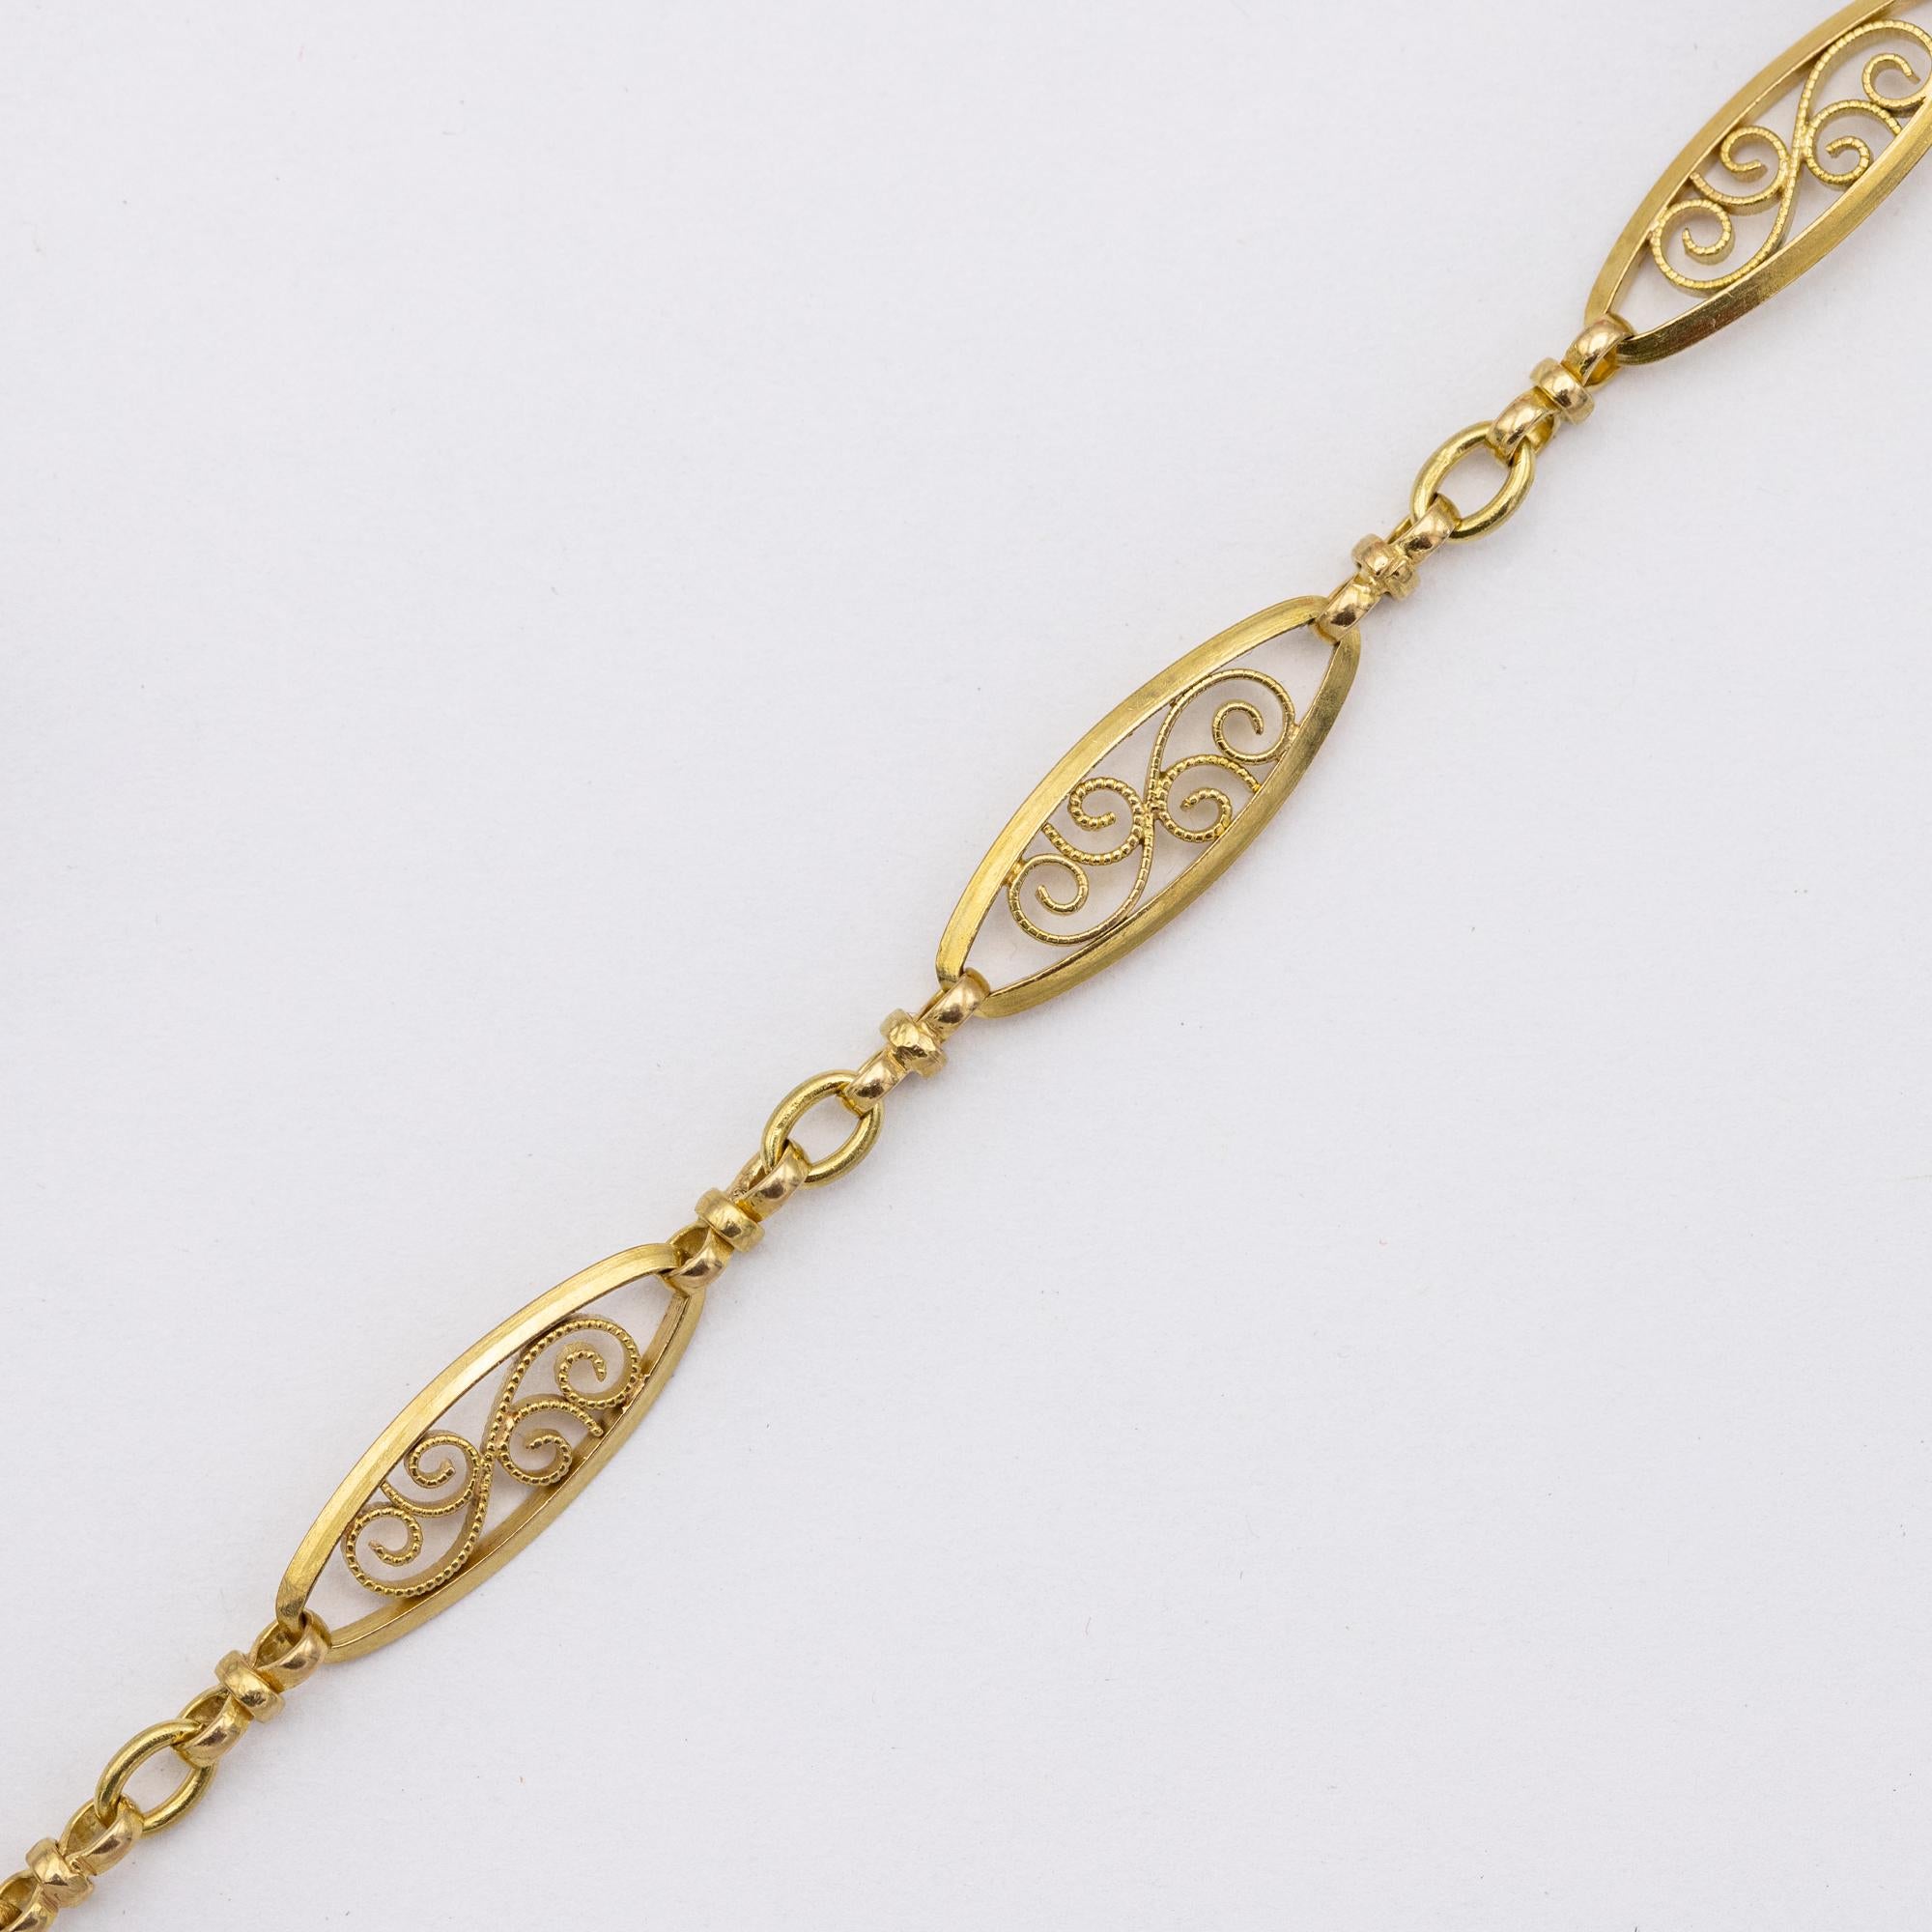 Women's or Men's Antique 18k gold Sautoir necklace, 155cm long guard, Victorian double rope chain